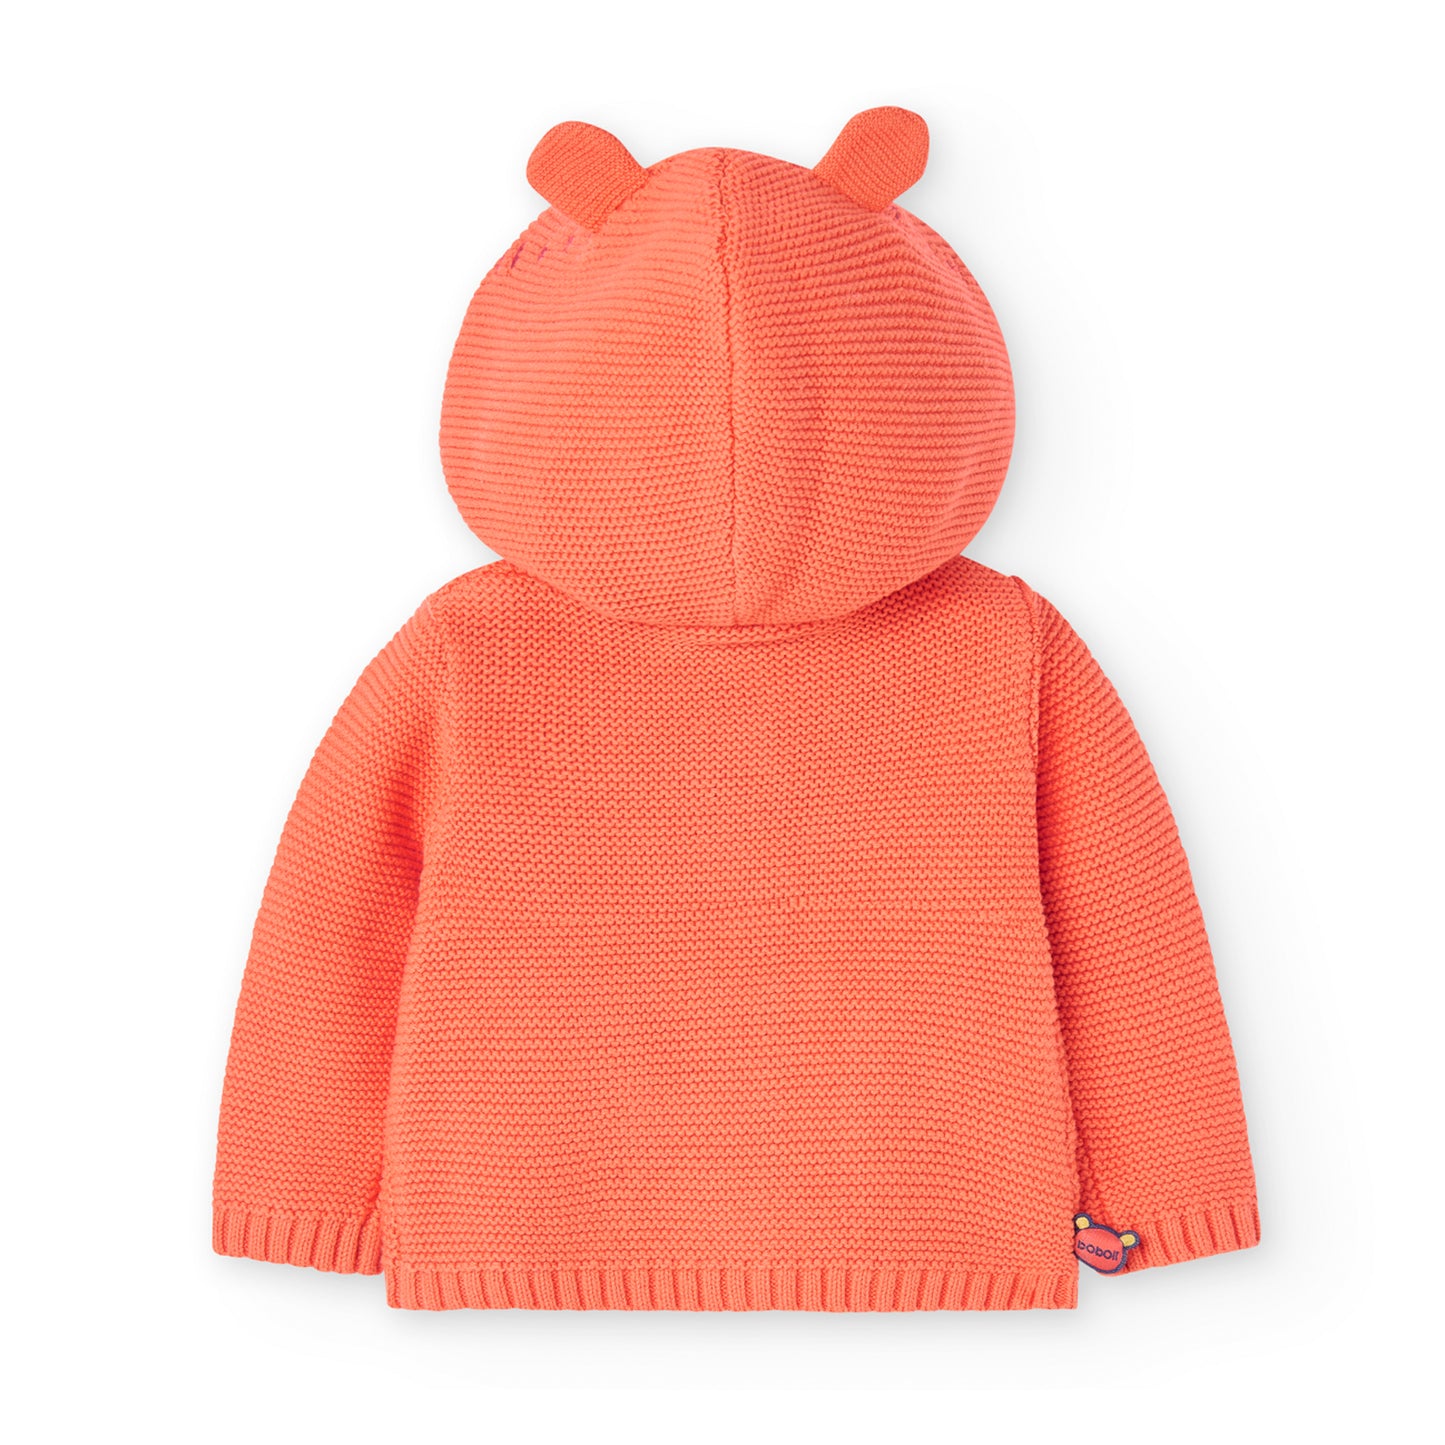 Sweater con Capucha Boboli Oso Naranja